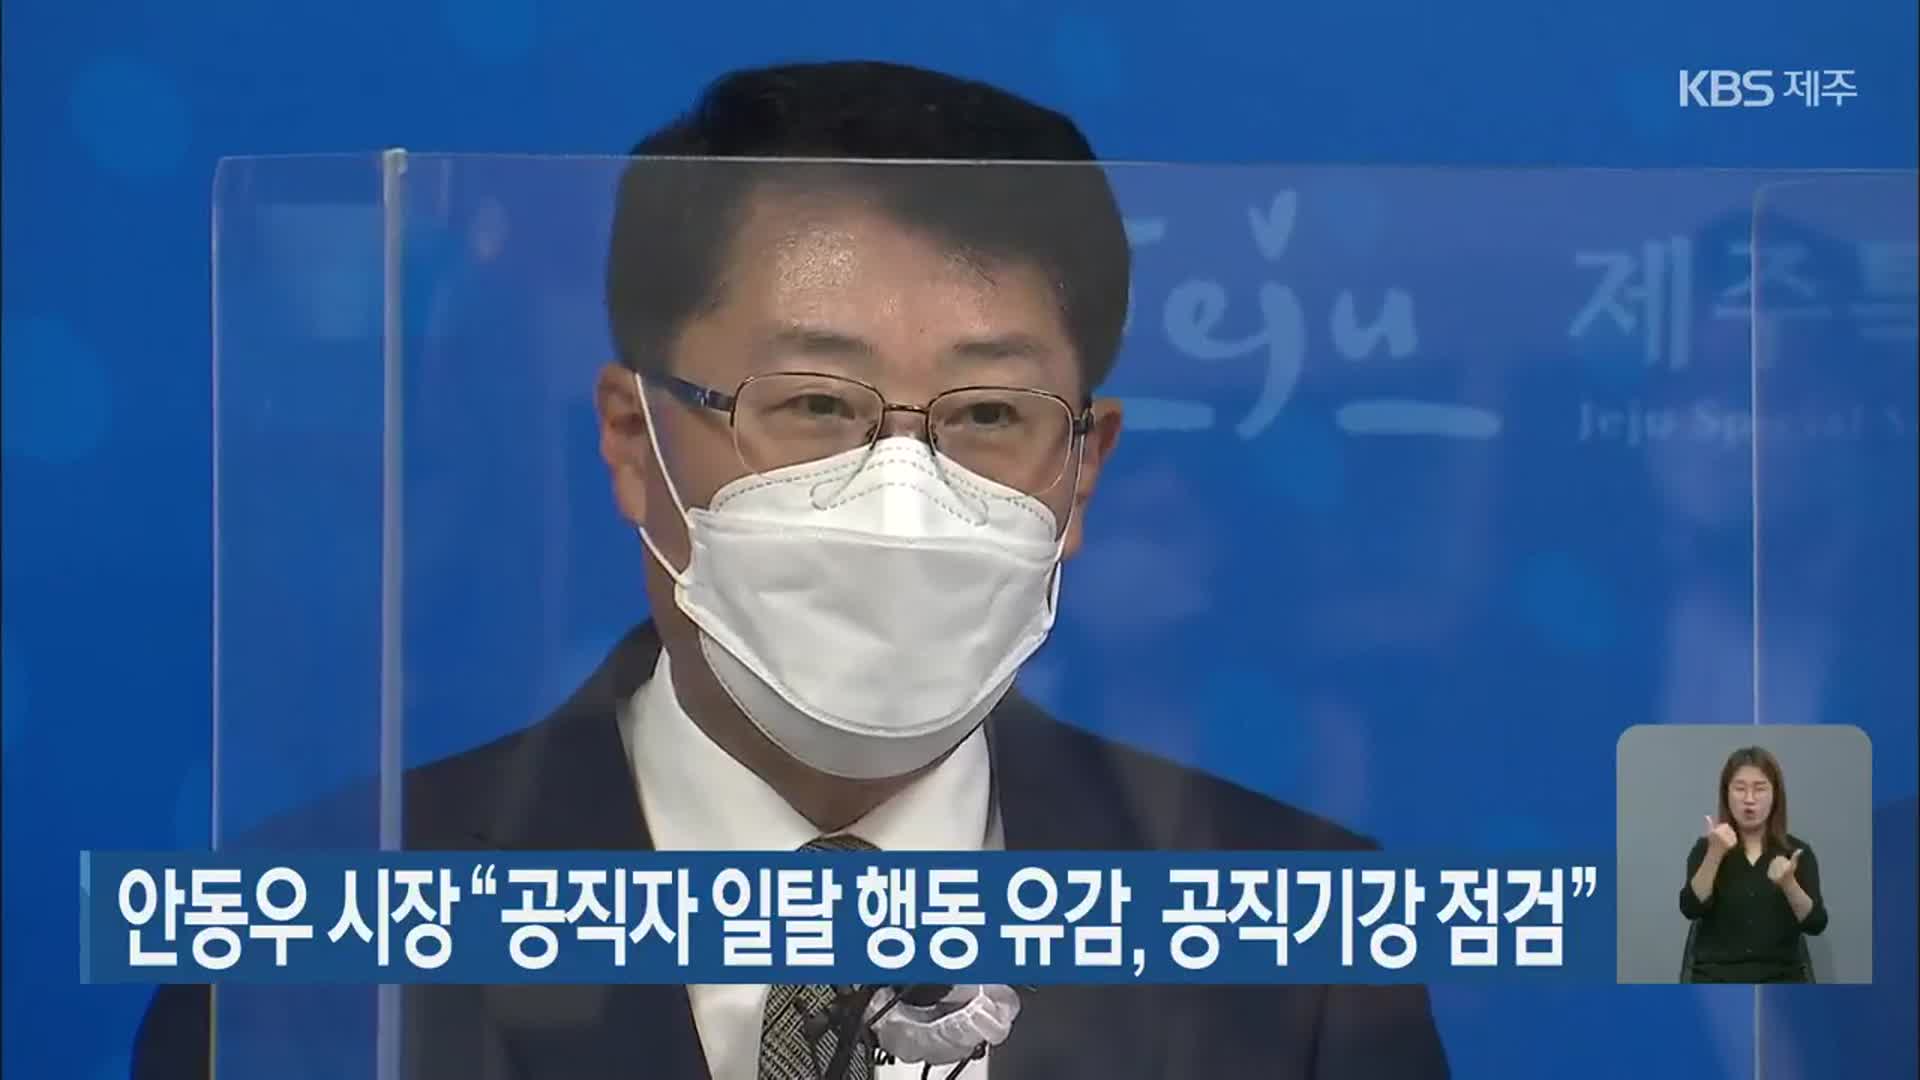 안동우 시장 “공직자 일탈 행동 유감, 공직기강 점검”